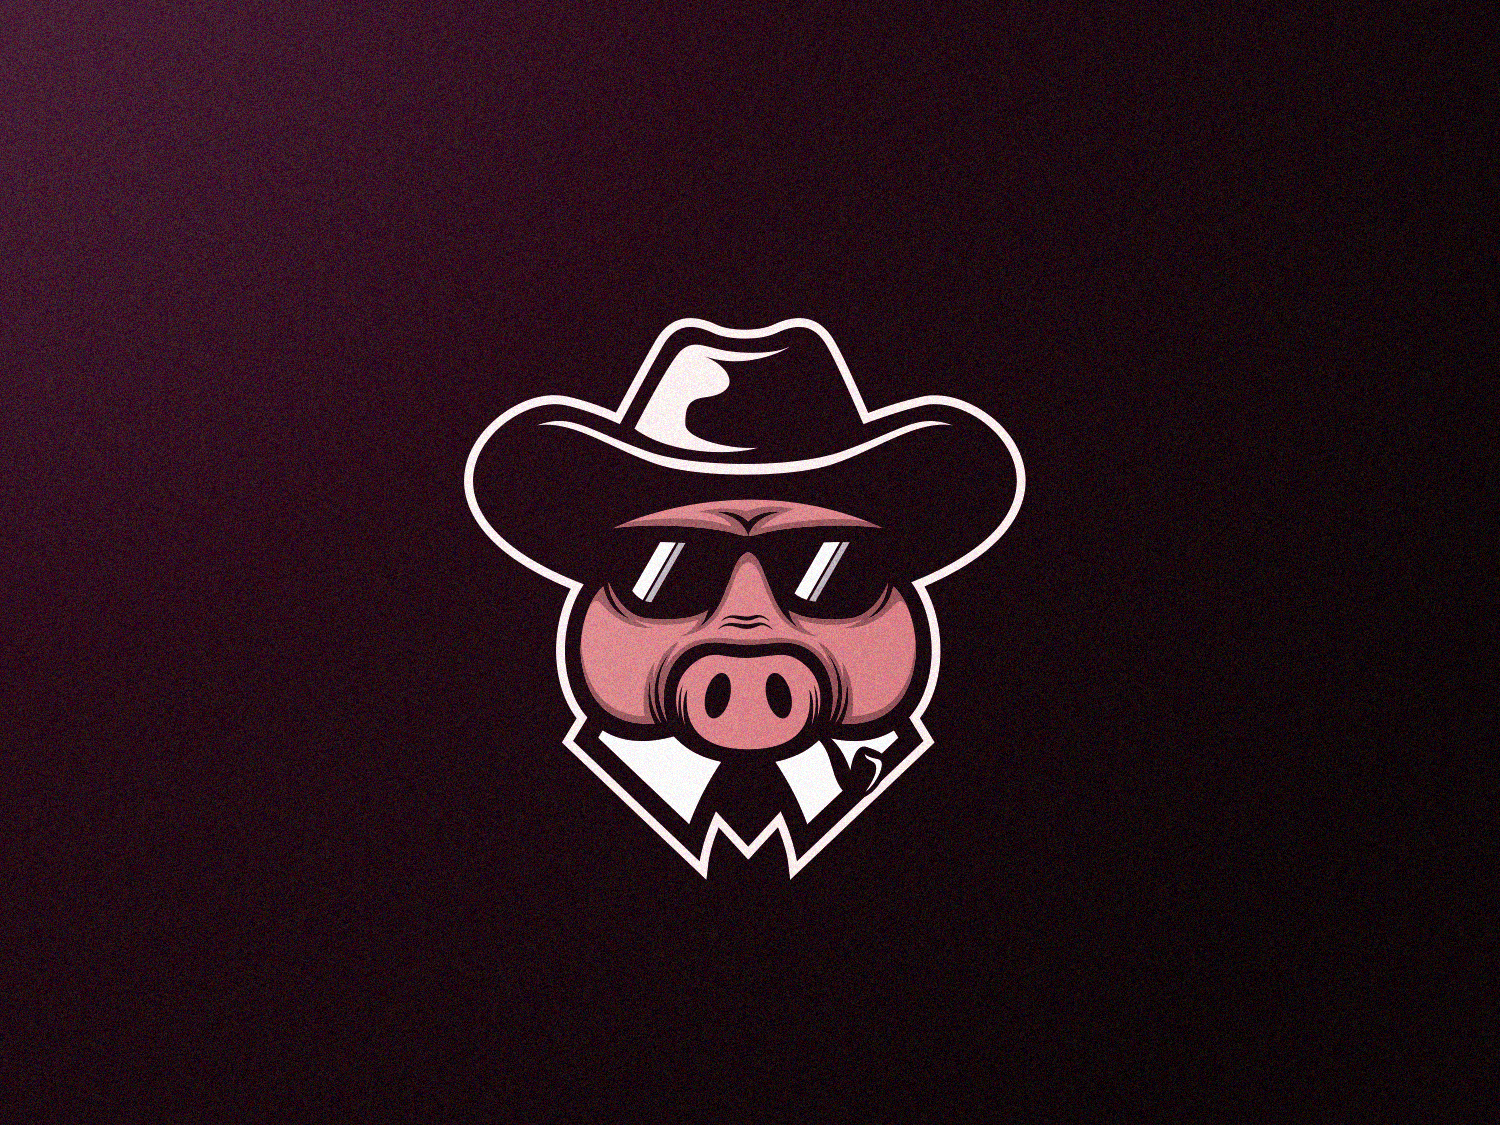 Boss Logo - Pig Boss logo design by Grafas Studio on Dribbble